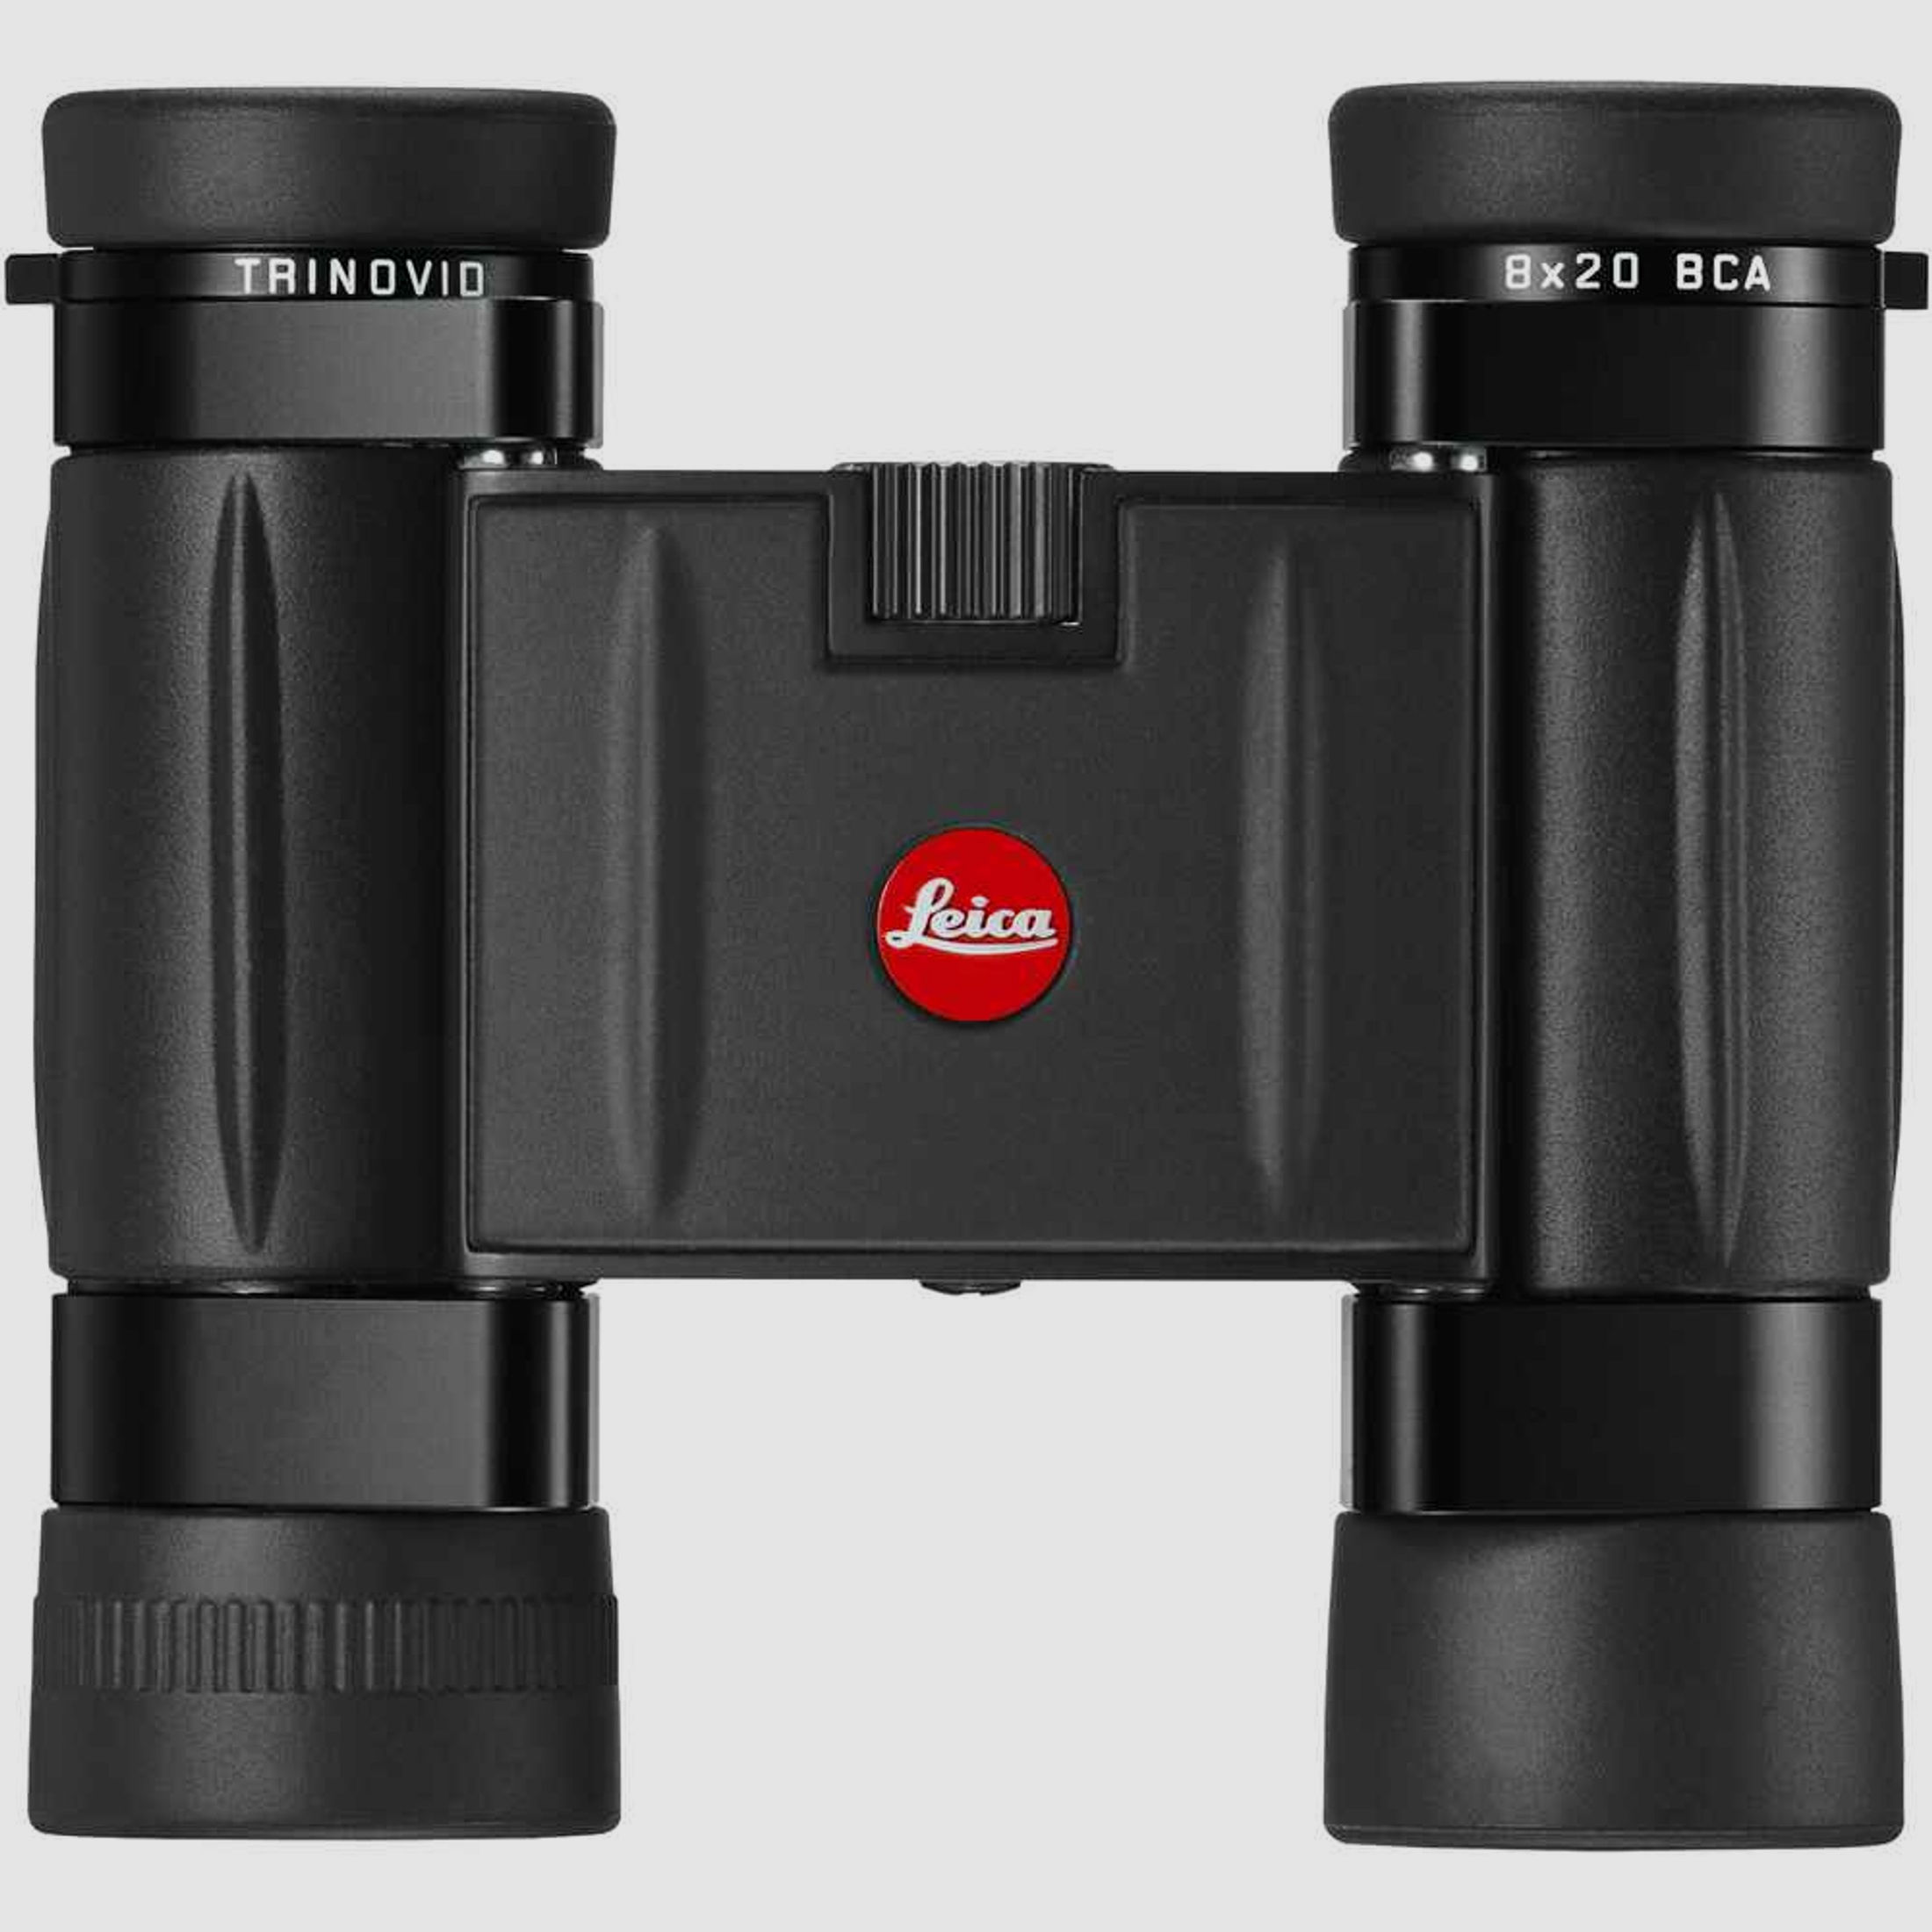 Leica TRINOVID 8x20 BCA Kompaktfernglas